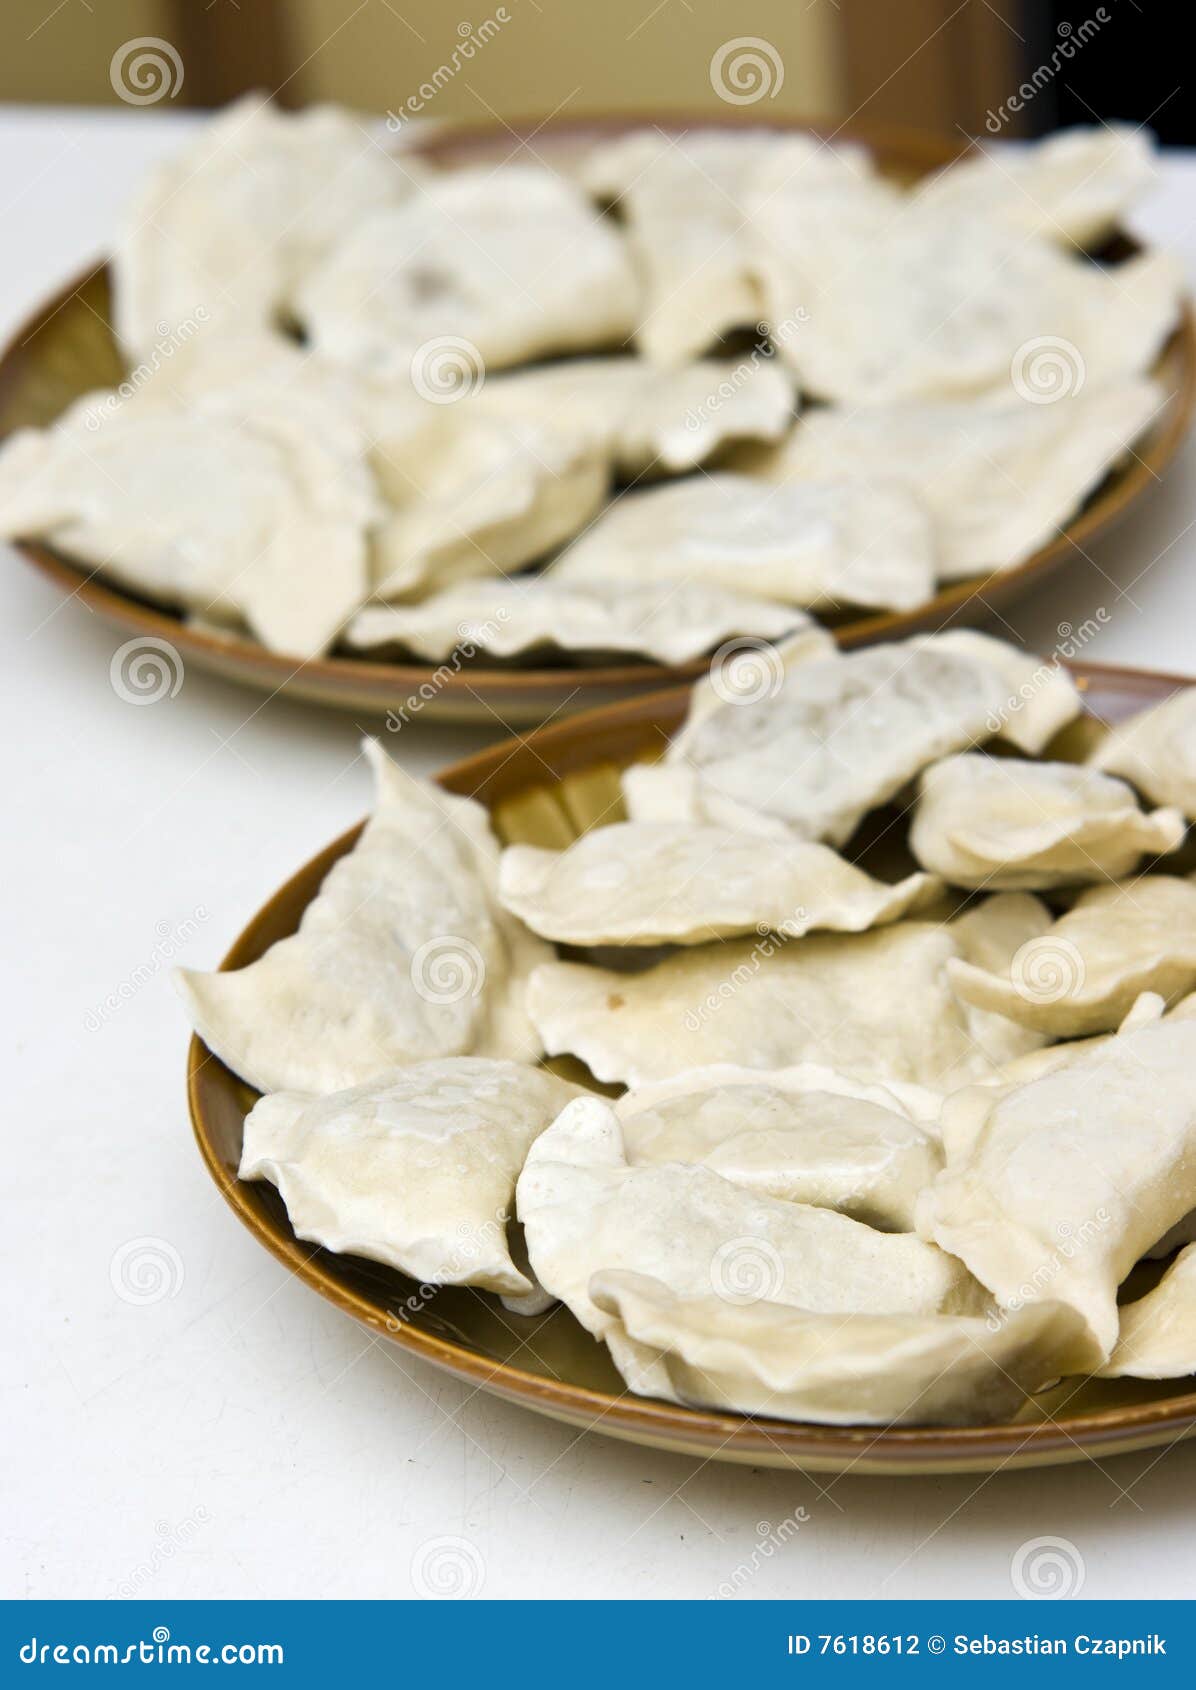 pierogi (dumplings)